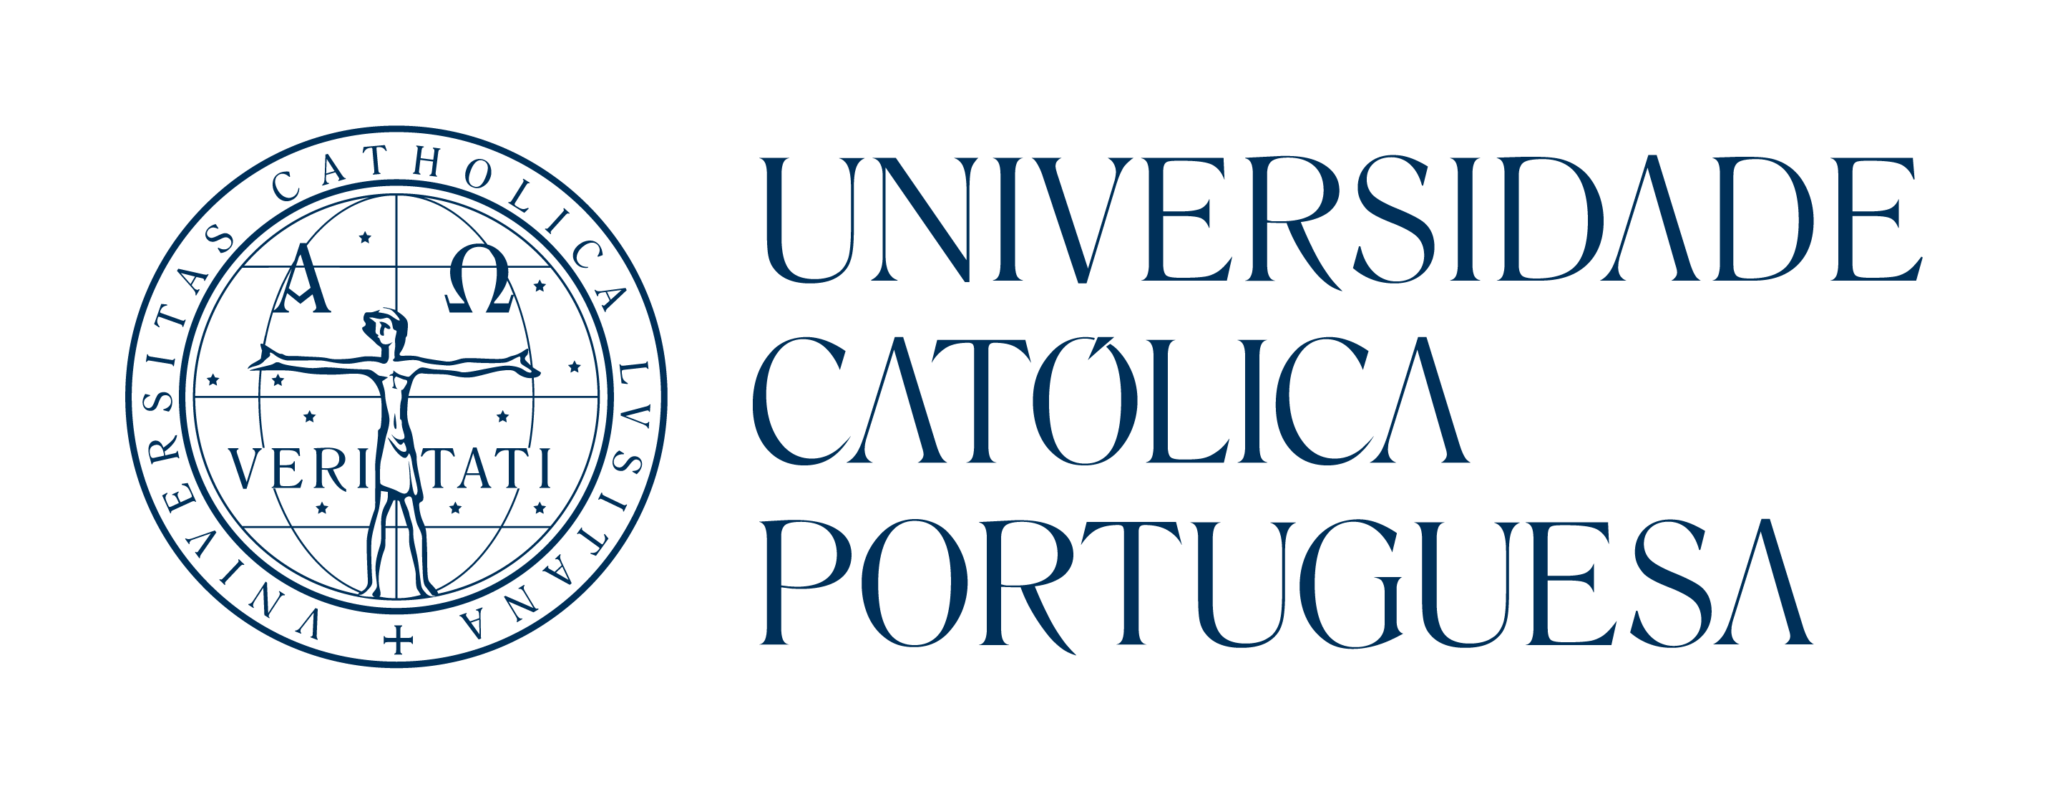 logo universidade católica portuguesa